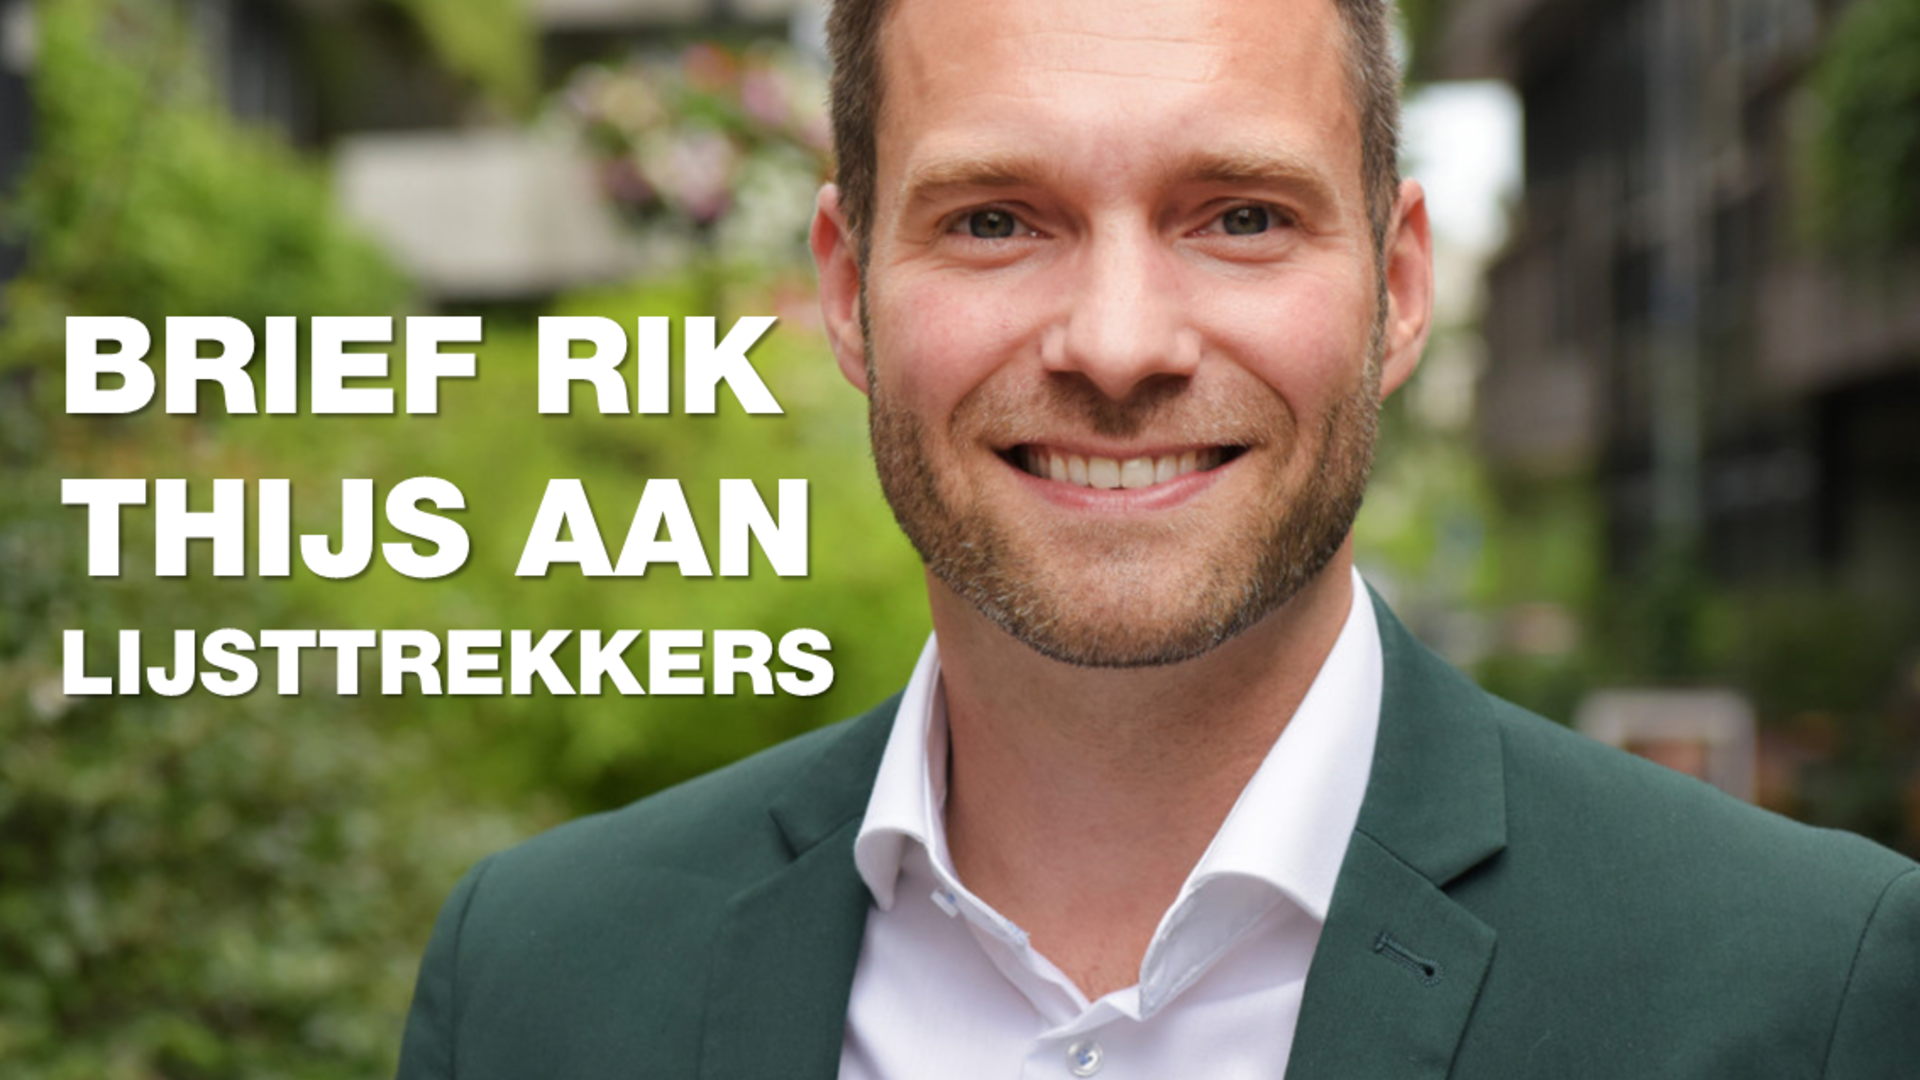 Brief Rik Thijs aan lijsttrekkers. Foto van Rik.